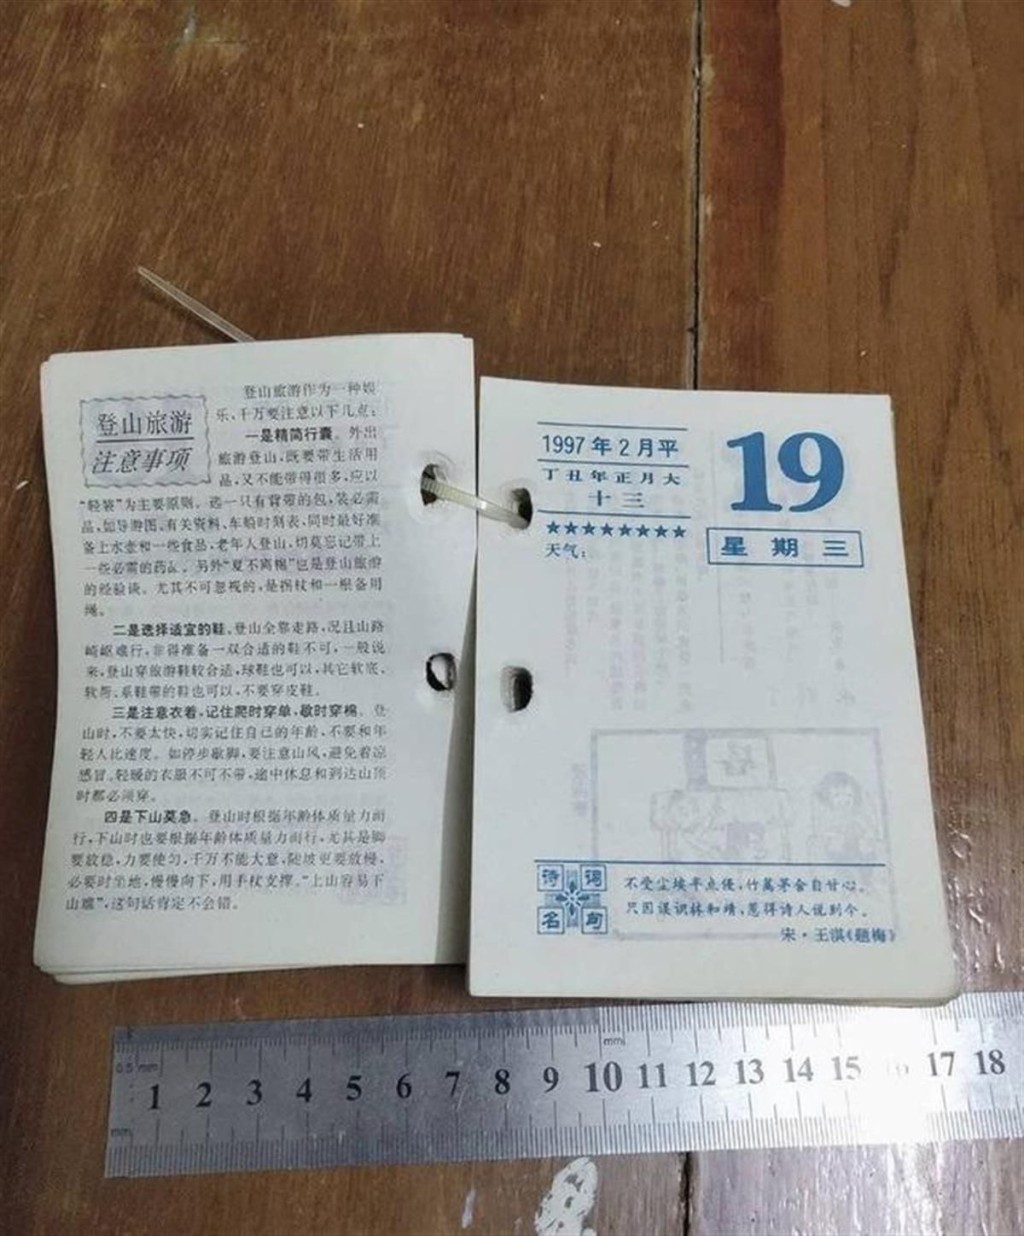 1996年的日曆賣到27元一張，有人作為生日禮物。 圖為商家出售的老日曆樣品。